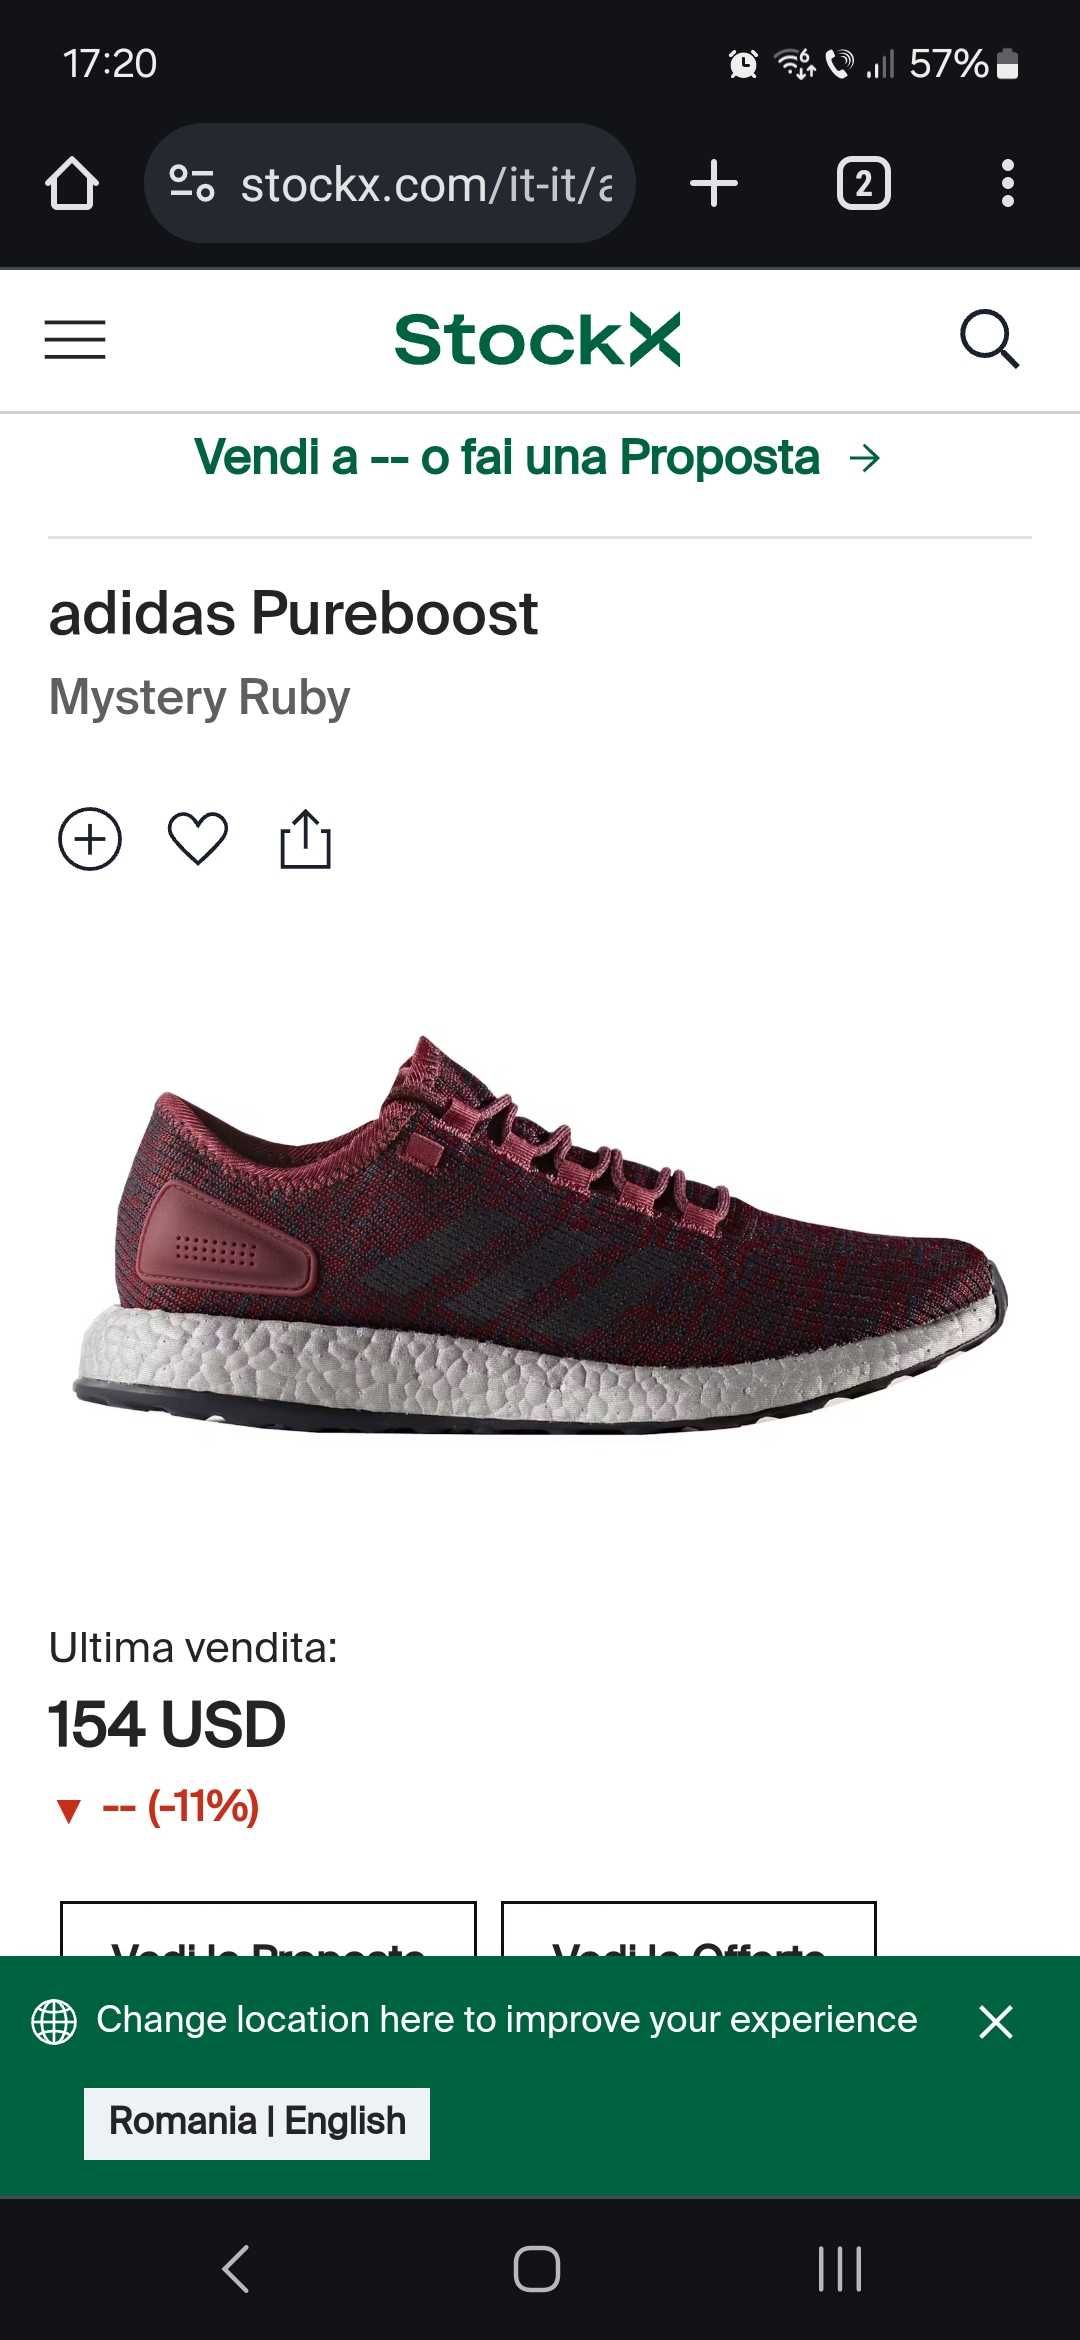 Adidas Pureboost
Mystery Ruby